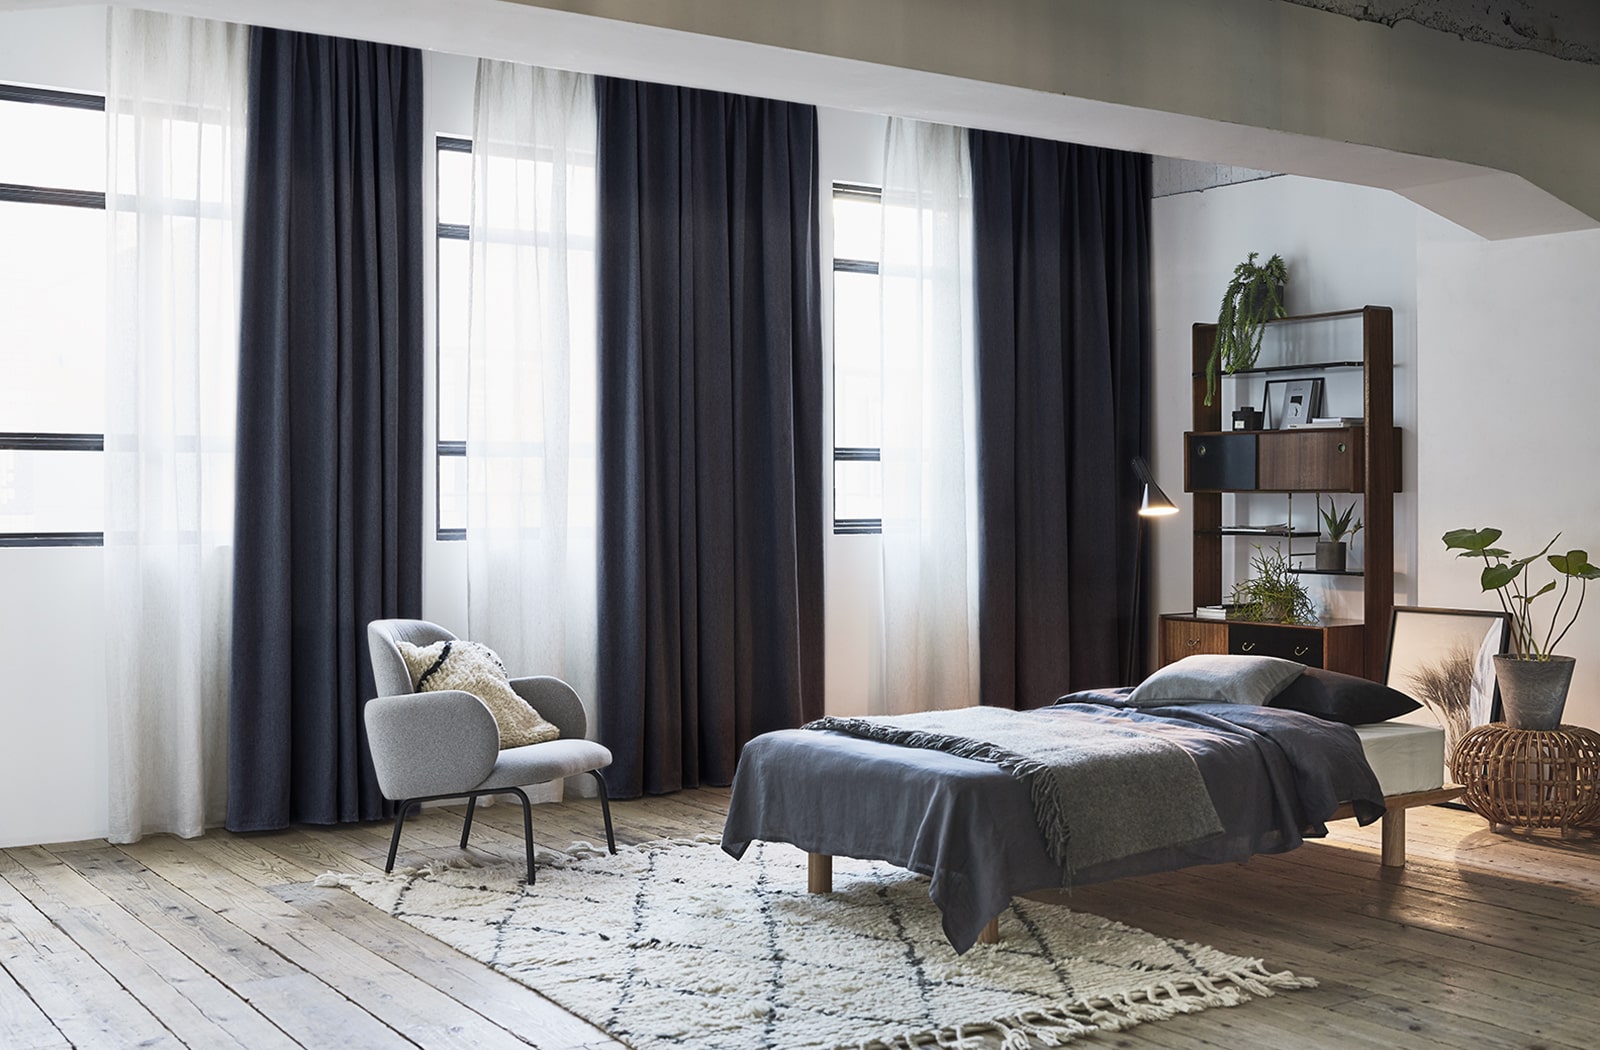 おしゃれな遮光カーテンで実現 過ごしやすい理想のお部屋作り 公式 オーダーカーテン通販 Wardrobe Sangetsu